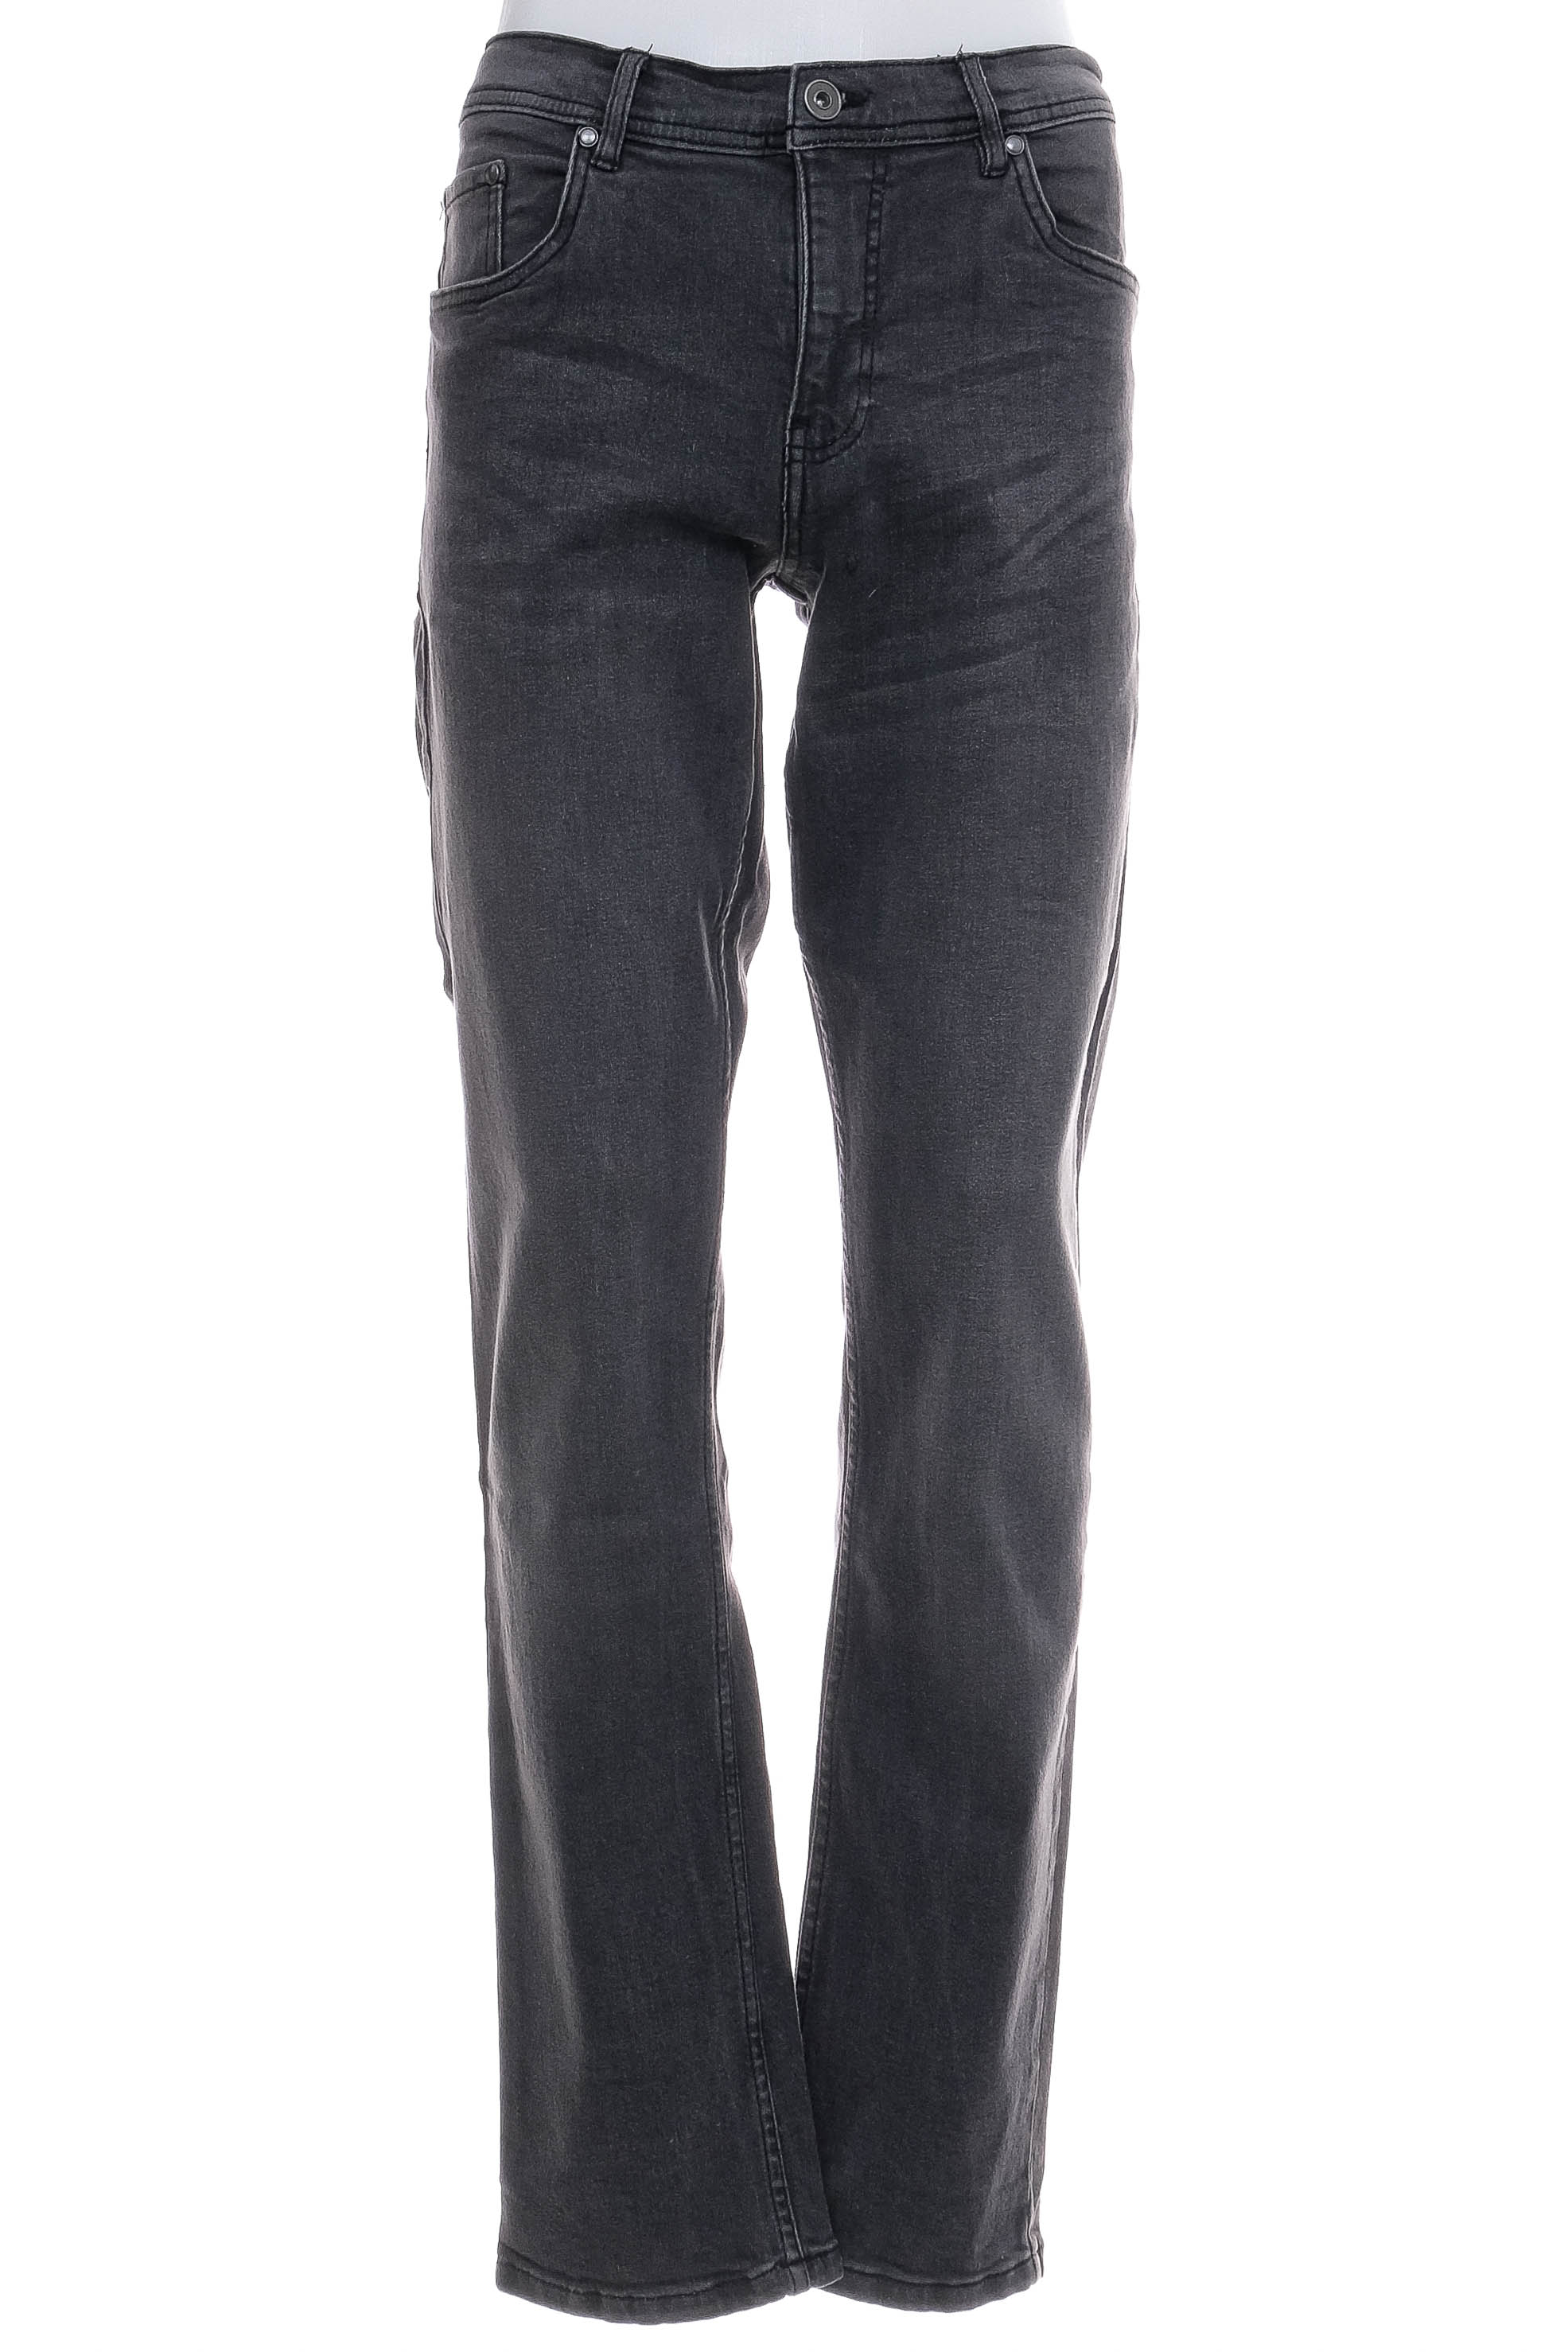 Jeans pentru bărbăți - WEST BAY - 0